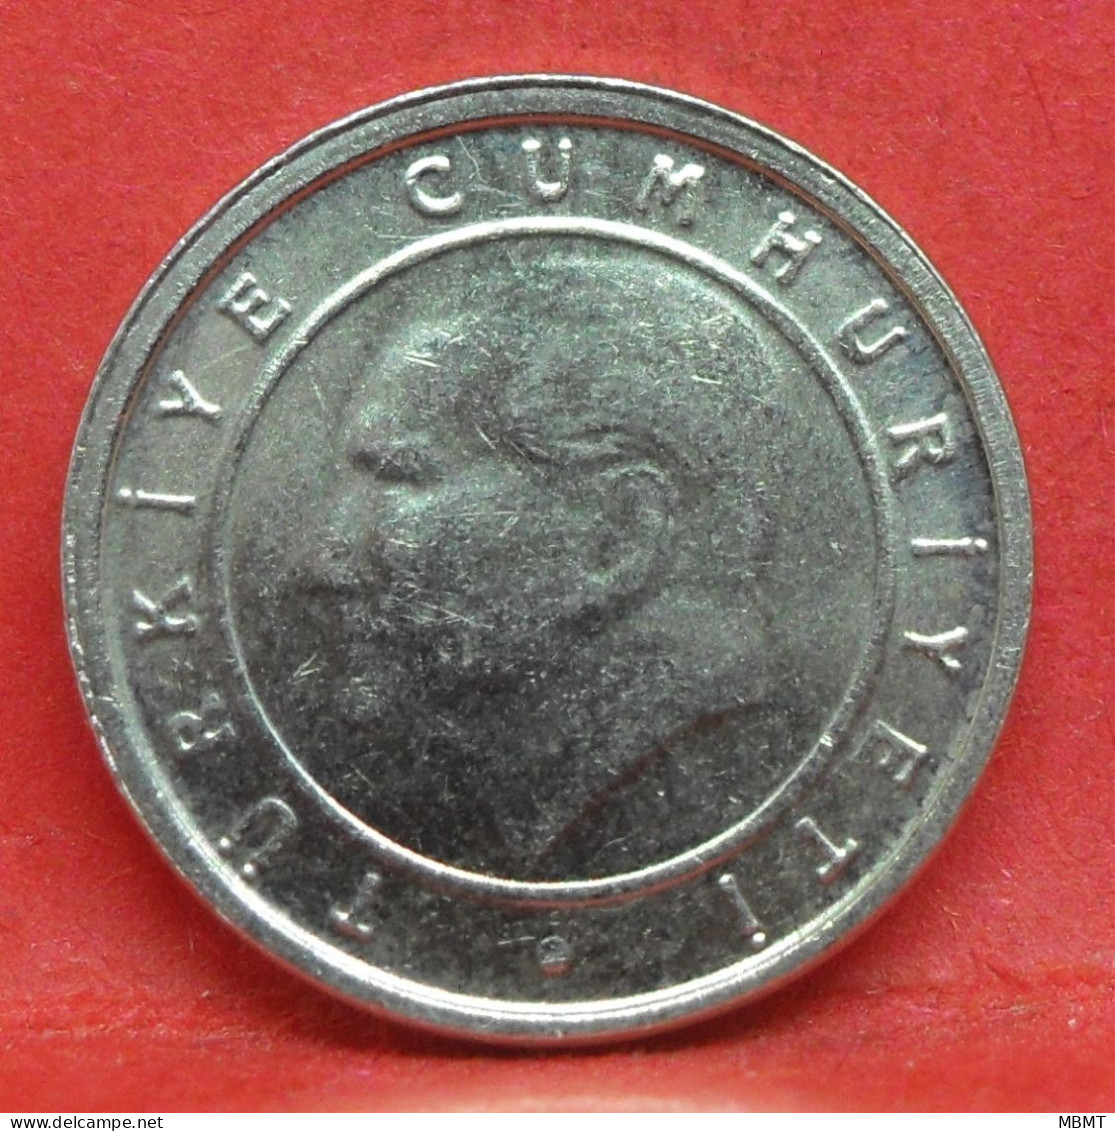 5 Kurus 2007 - TTB - Pièce De Monnaie Turquie - Article N°4955 - Turquie